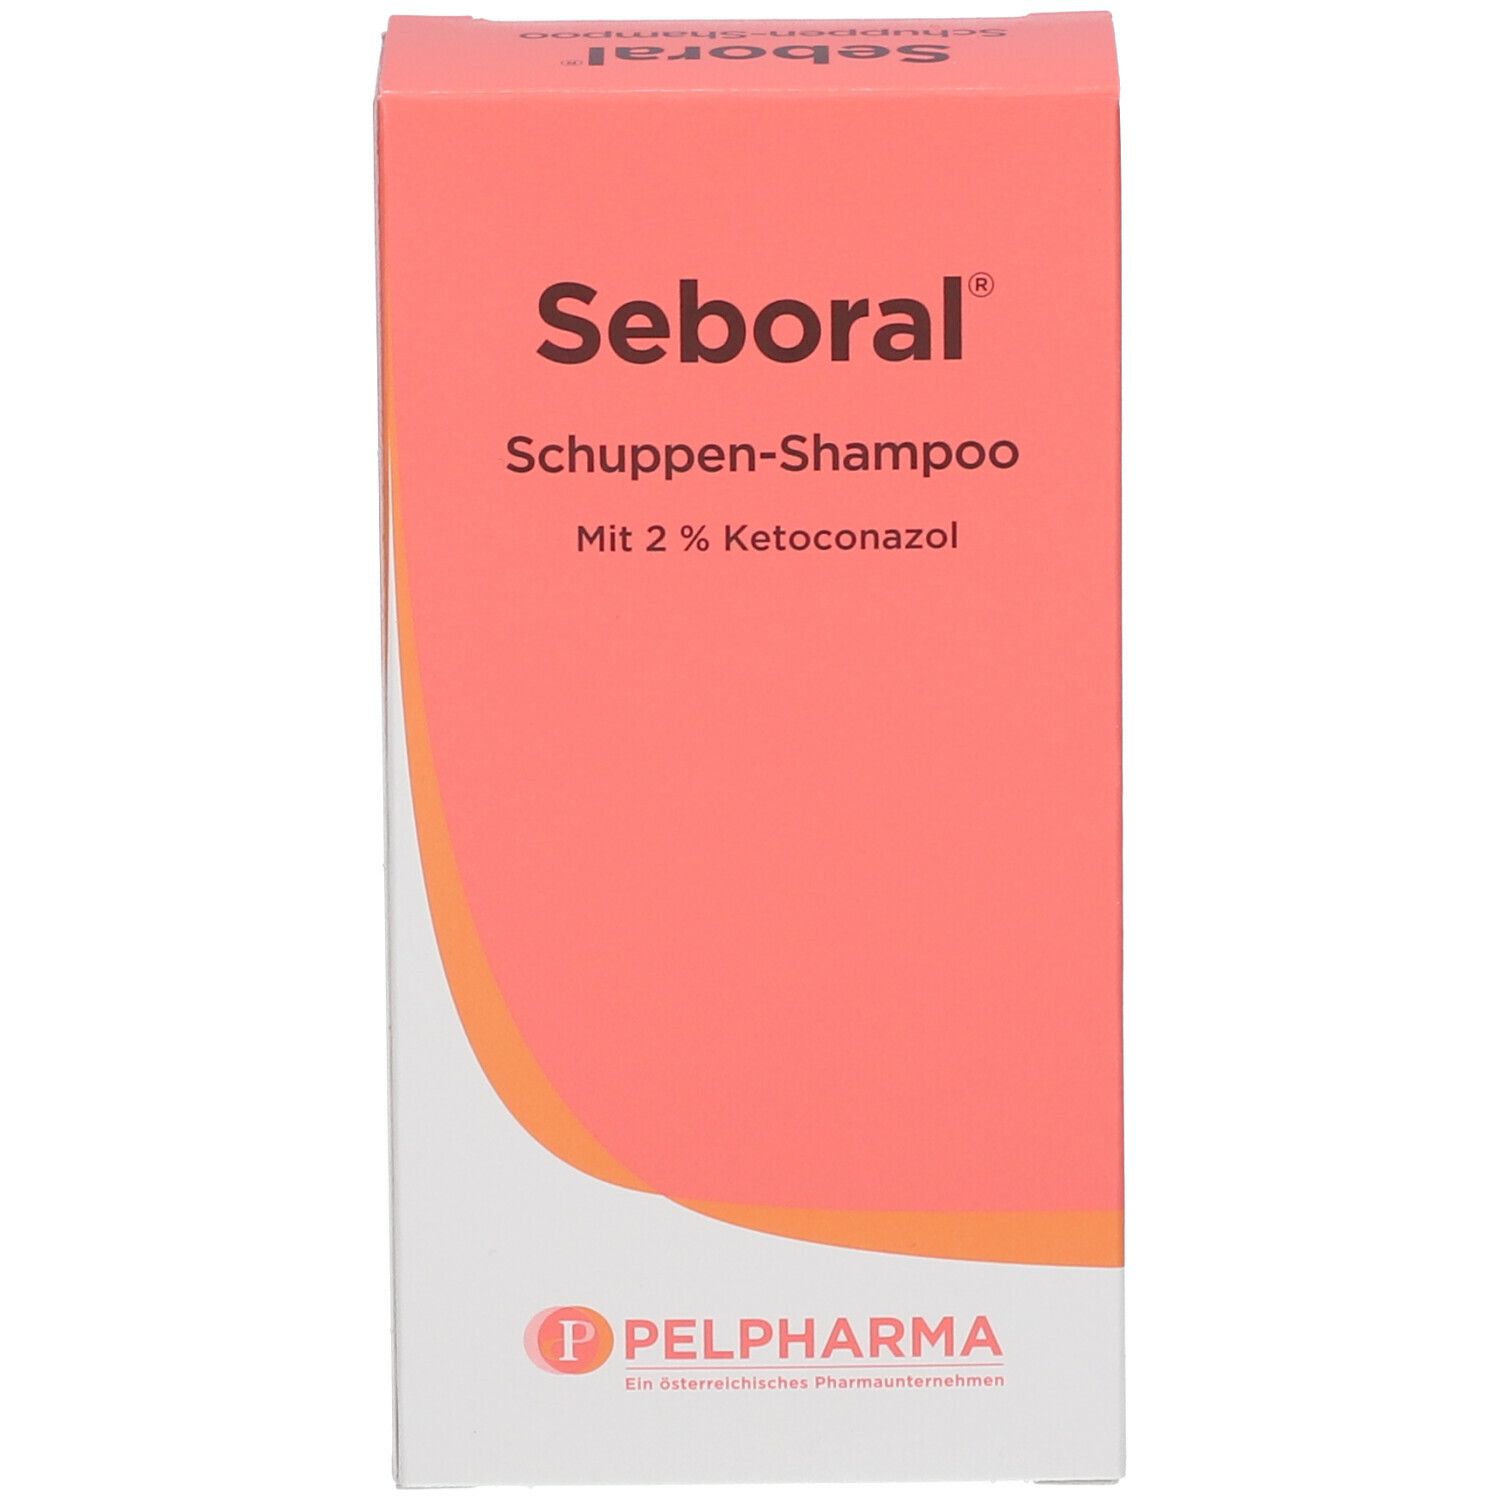 Seboral® Schuppen-Shampoo